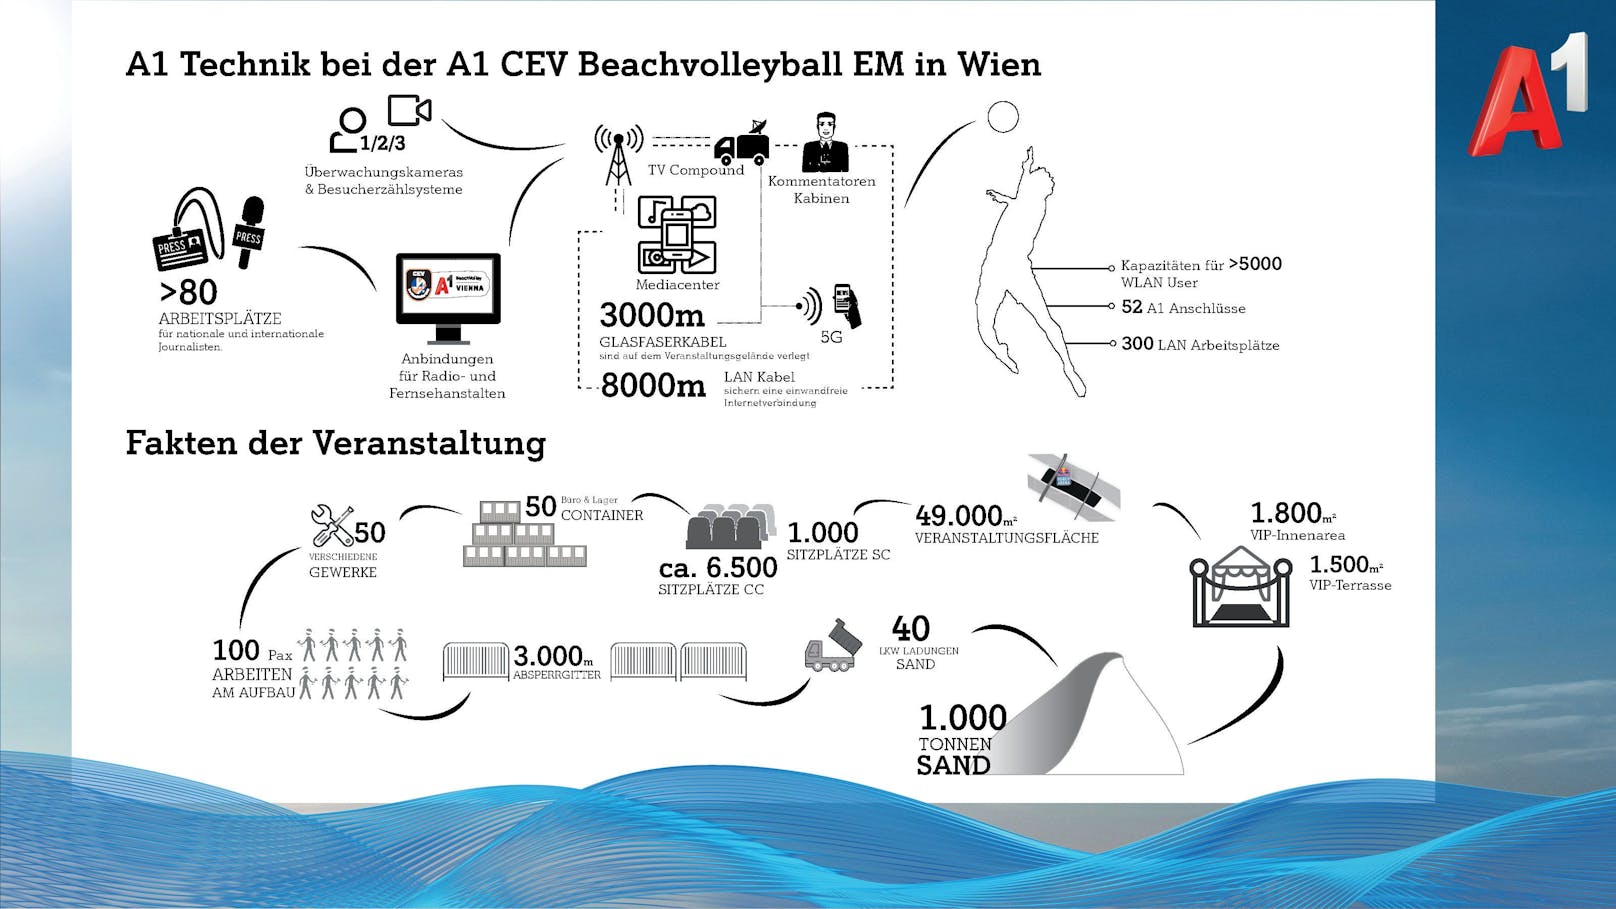 A1 Technik bei der A1 CEV Beachvolleyball EM in Wien.